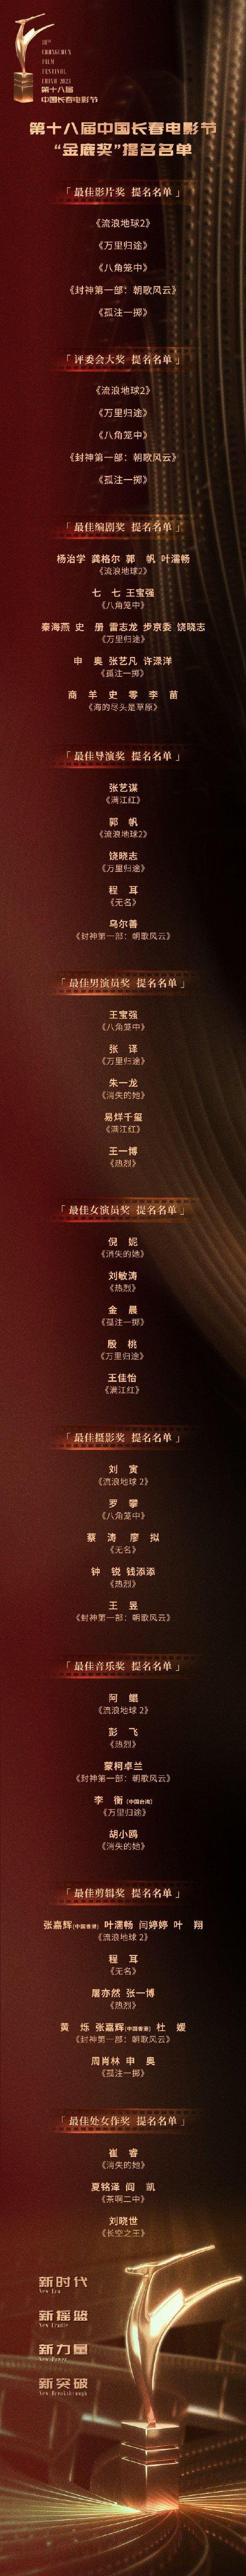 第十八届中国长春电影节提名名单公布